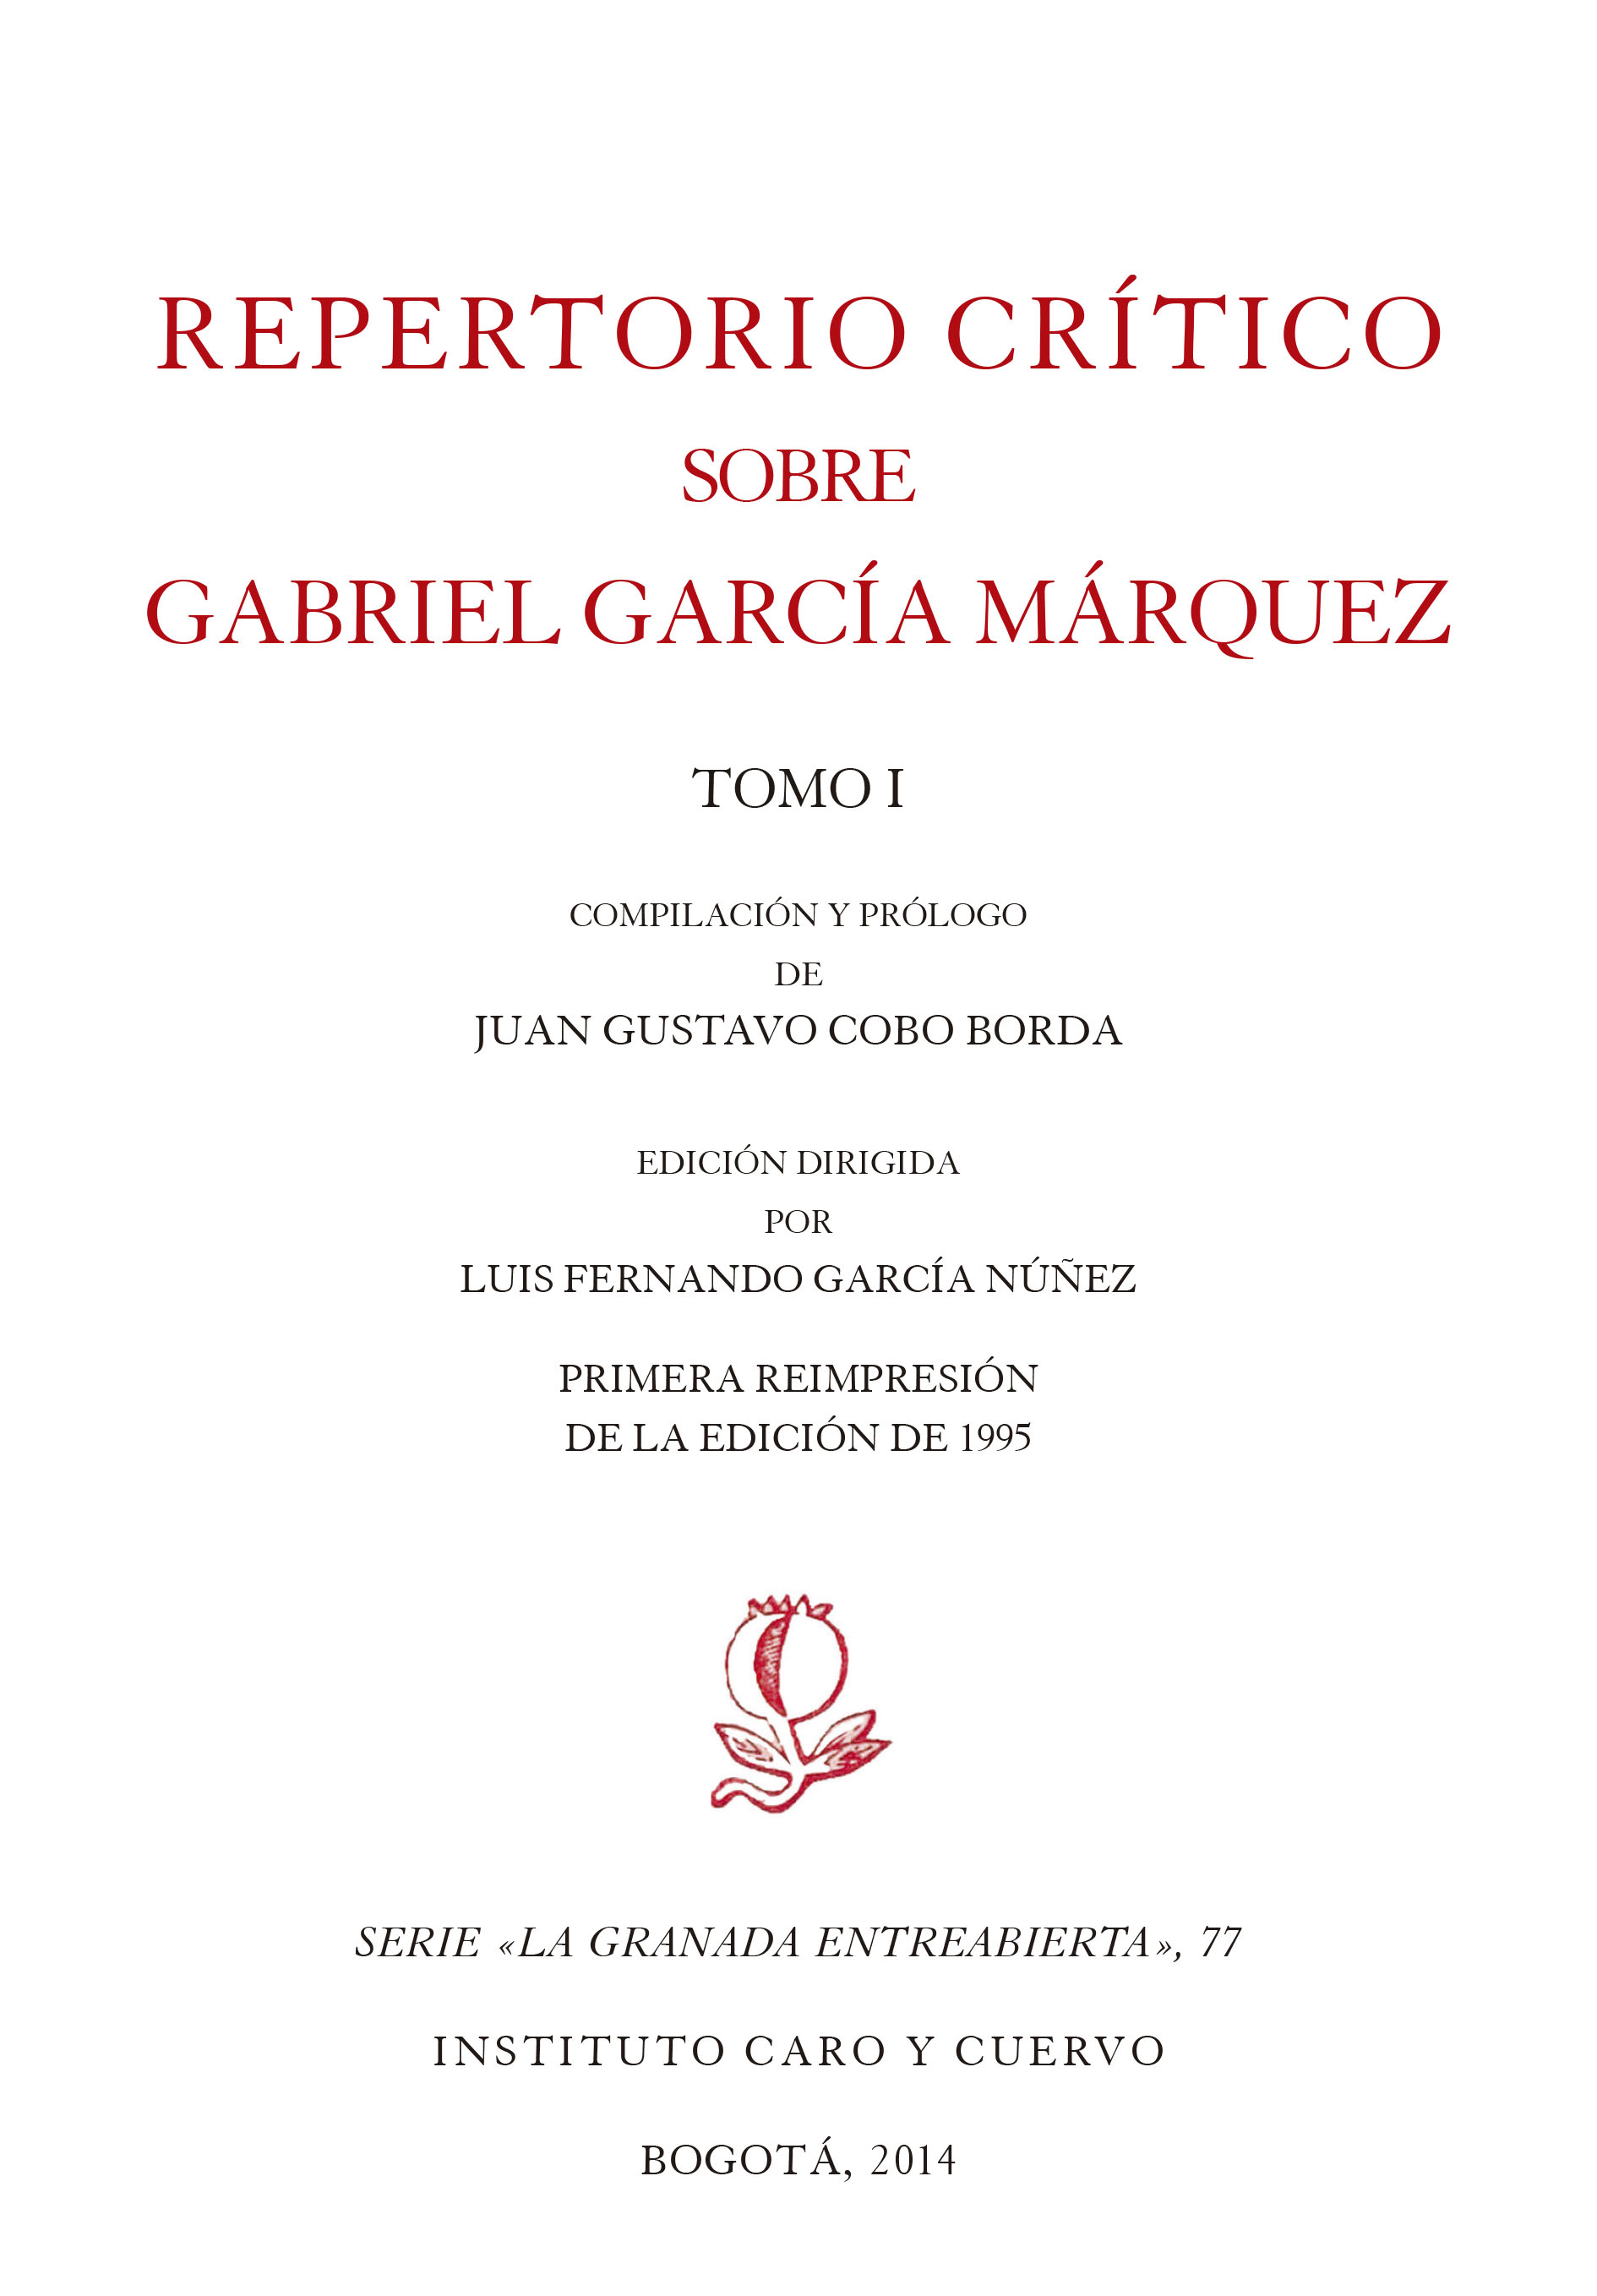 Repertorio crítico sobre Gabriel García Márquez, Tomo I